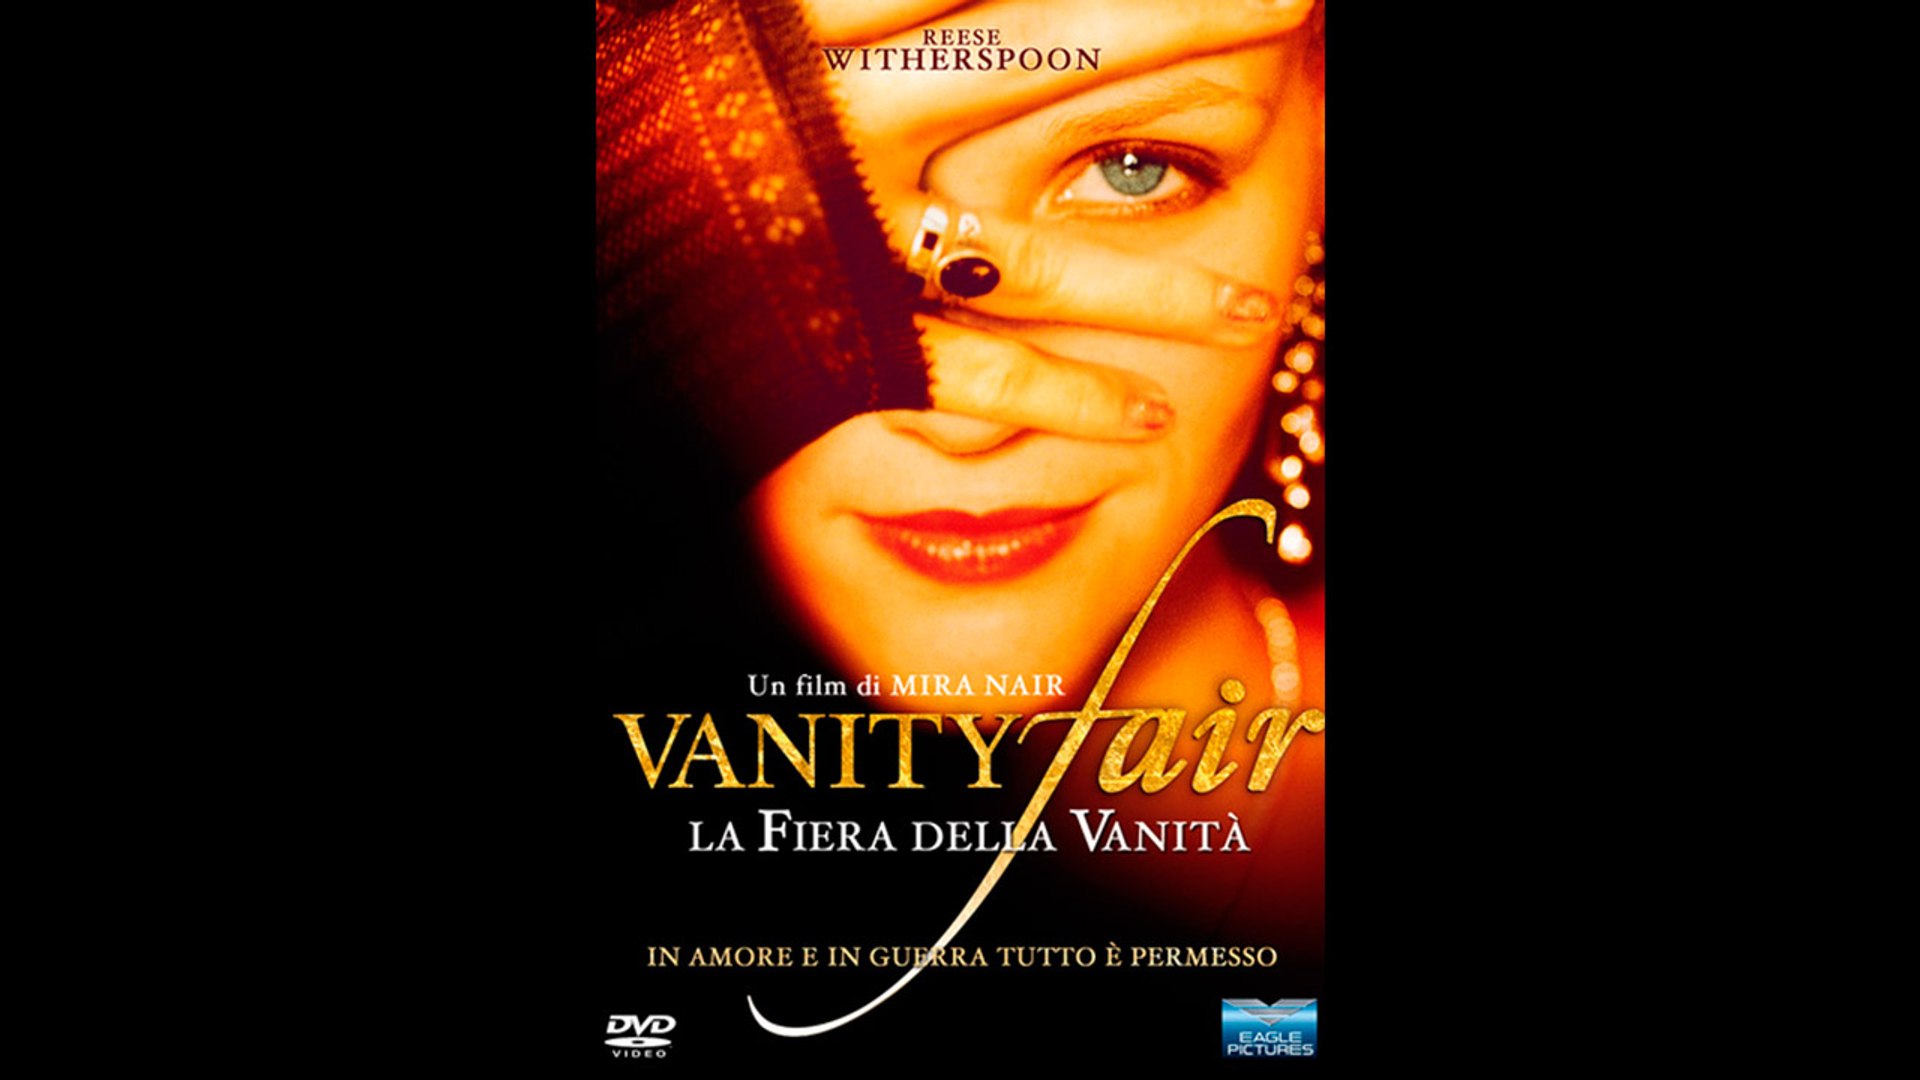 La fiera della vanità (2004).avi MP3 WEBDLRIP ITA - Video Dailymotion